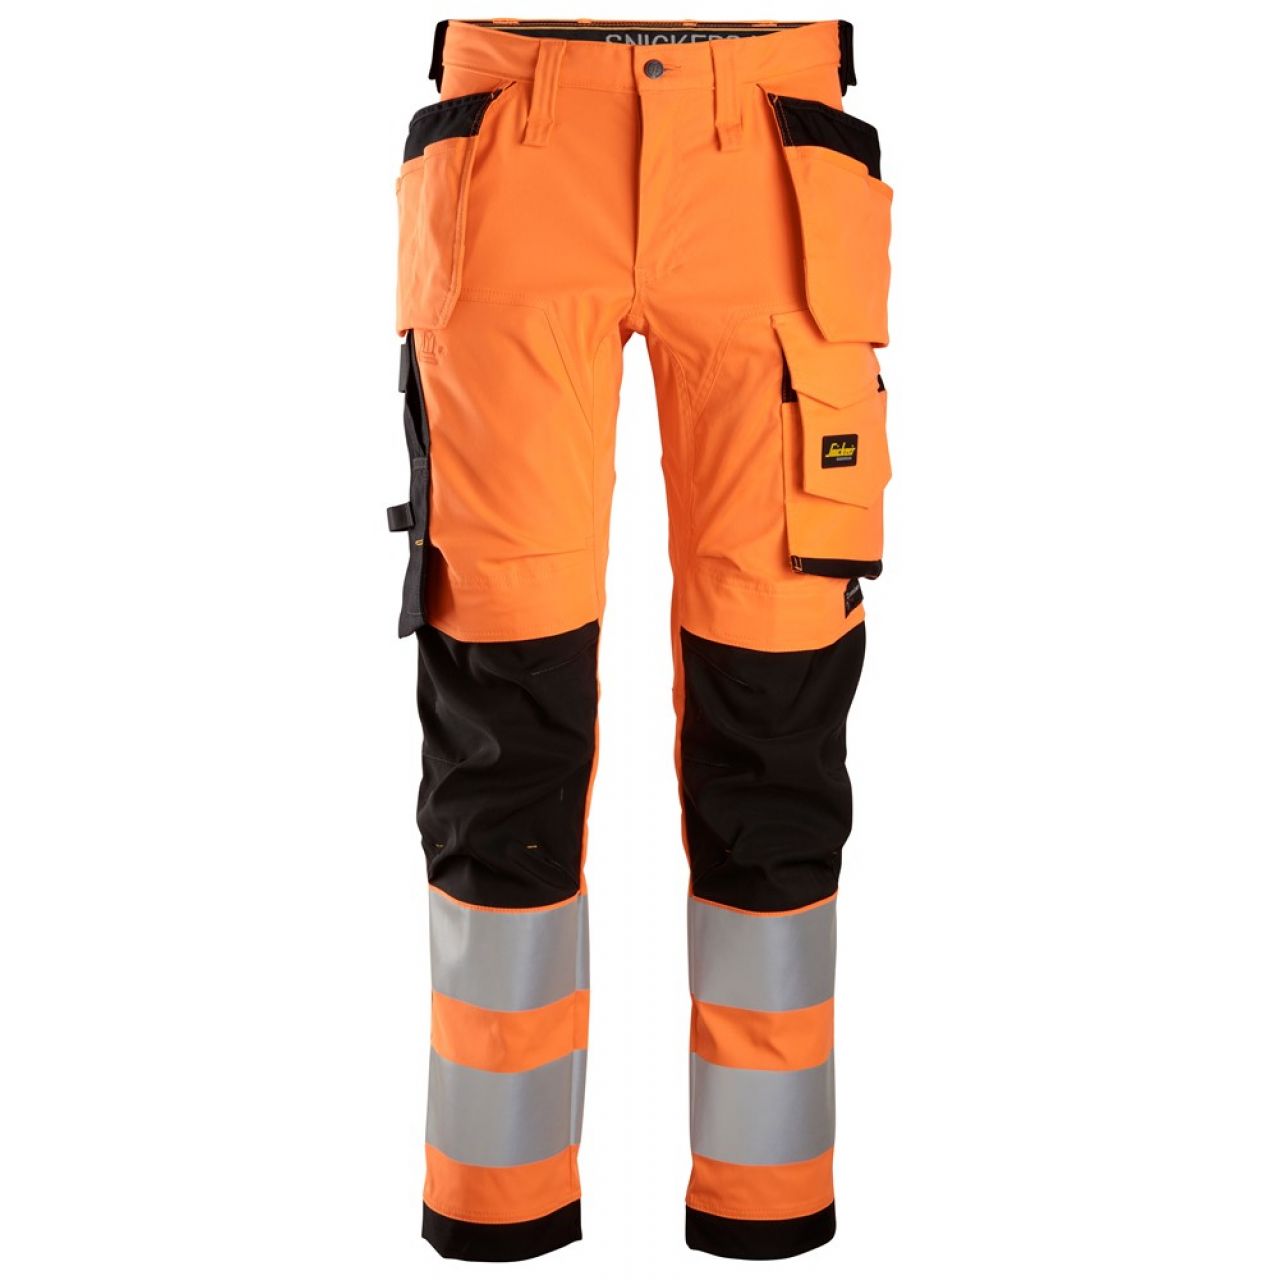 6243 Pantalones largos de trabajo elásticos de alta visibilidad clase 2 con bolsillos flotantes naranja-negro talla 160